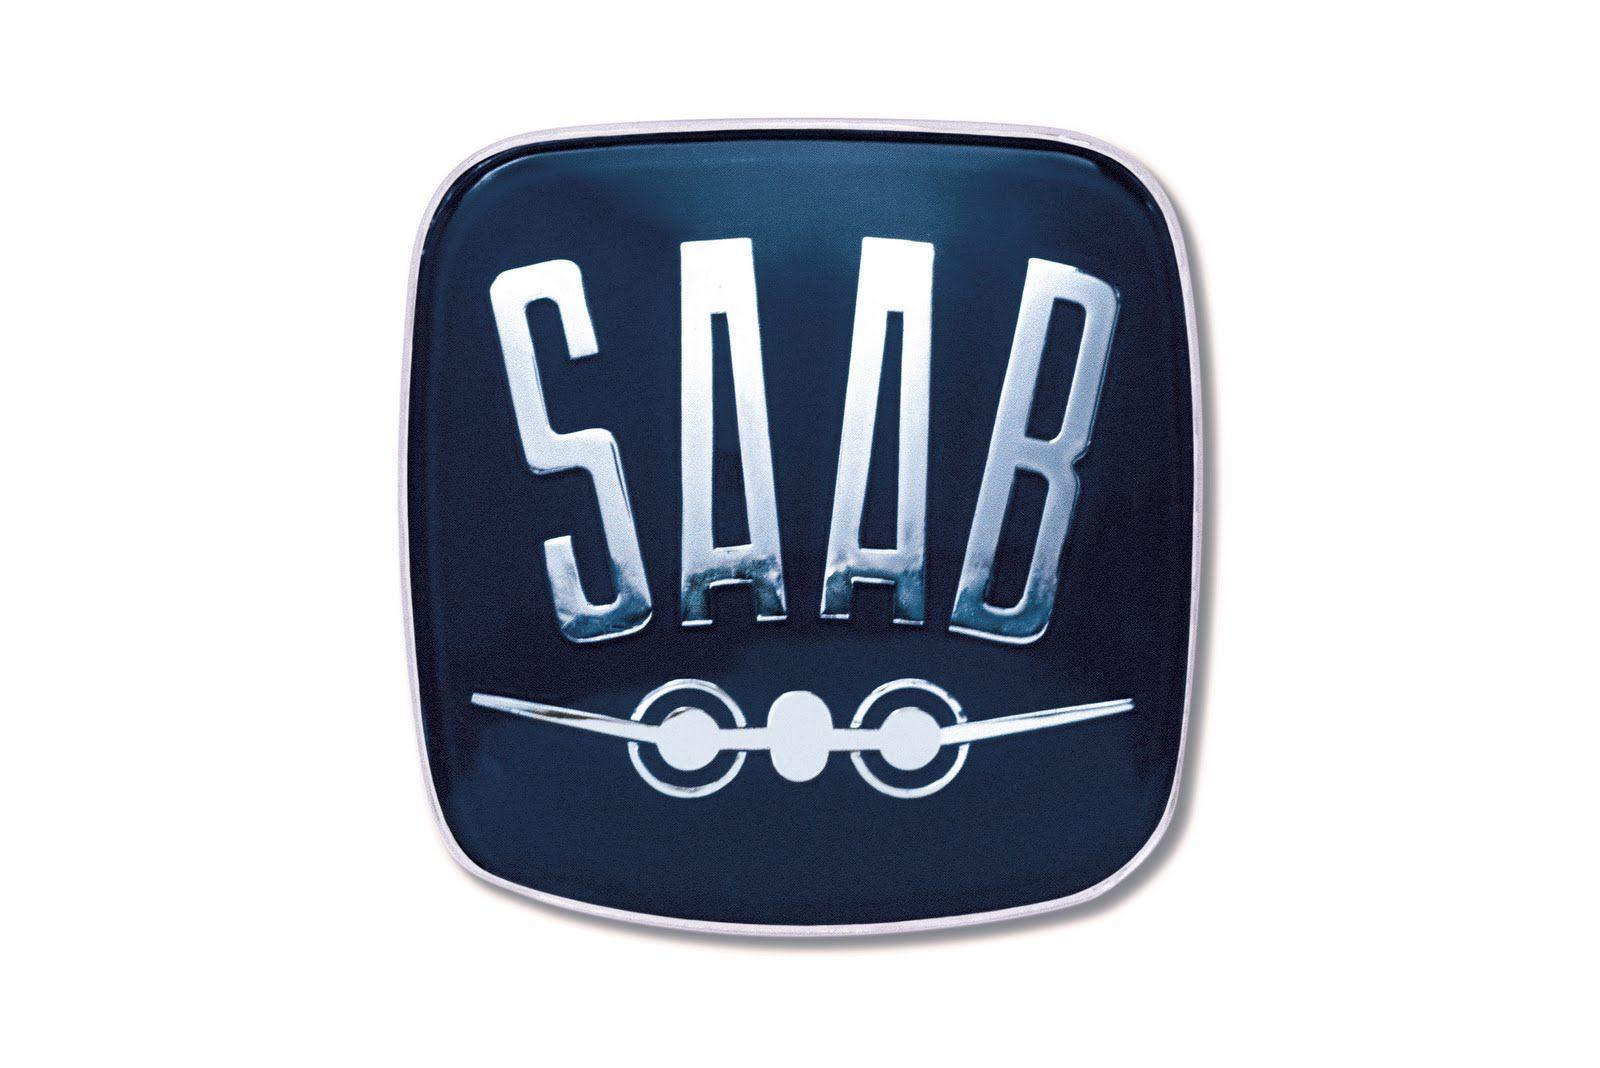 Saab Logo - Saab Marque and Emblem — The Saab Museum